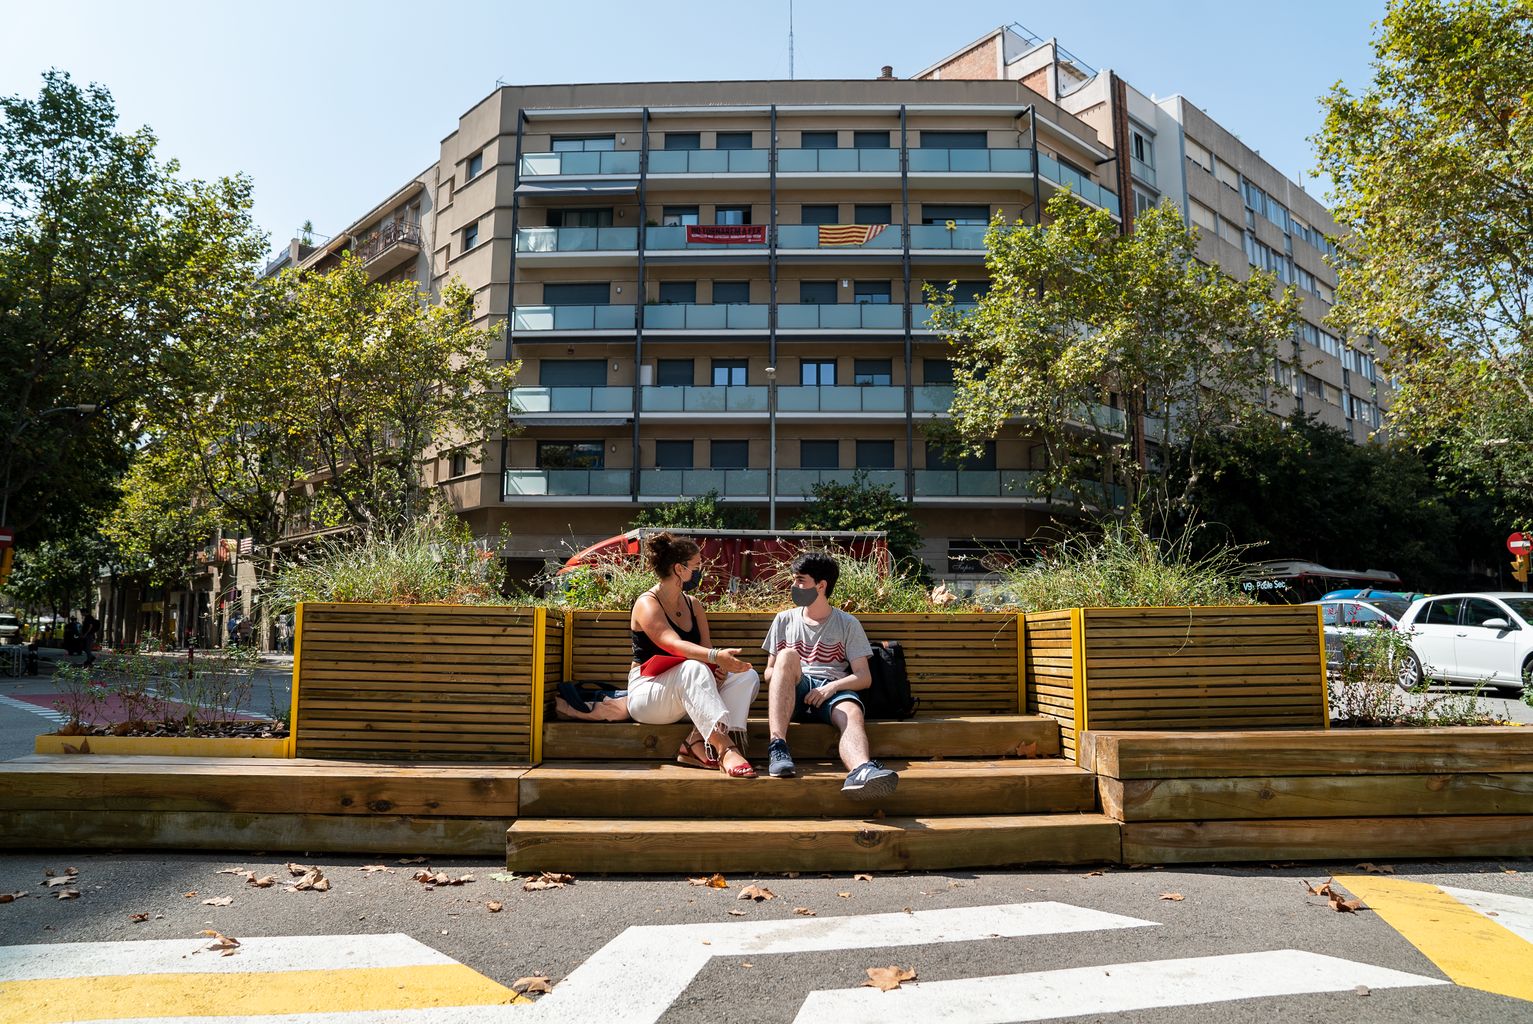 Dos joves de l'Institut Viladomat conversen asseguts a les jardineres amb bancs instal·lades a la zona pacificada al voltant del centre educatiu. Es veu la zona de la vorera ampliada pintada amb ratlles obliqües blanques i grogues